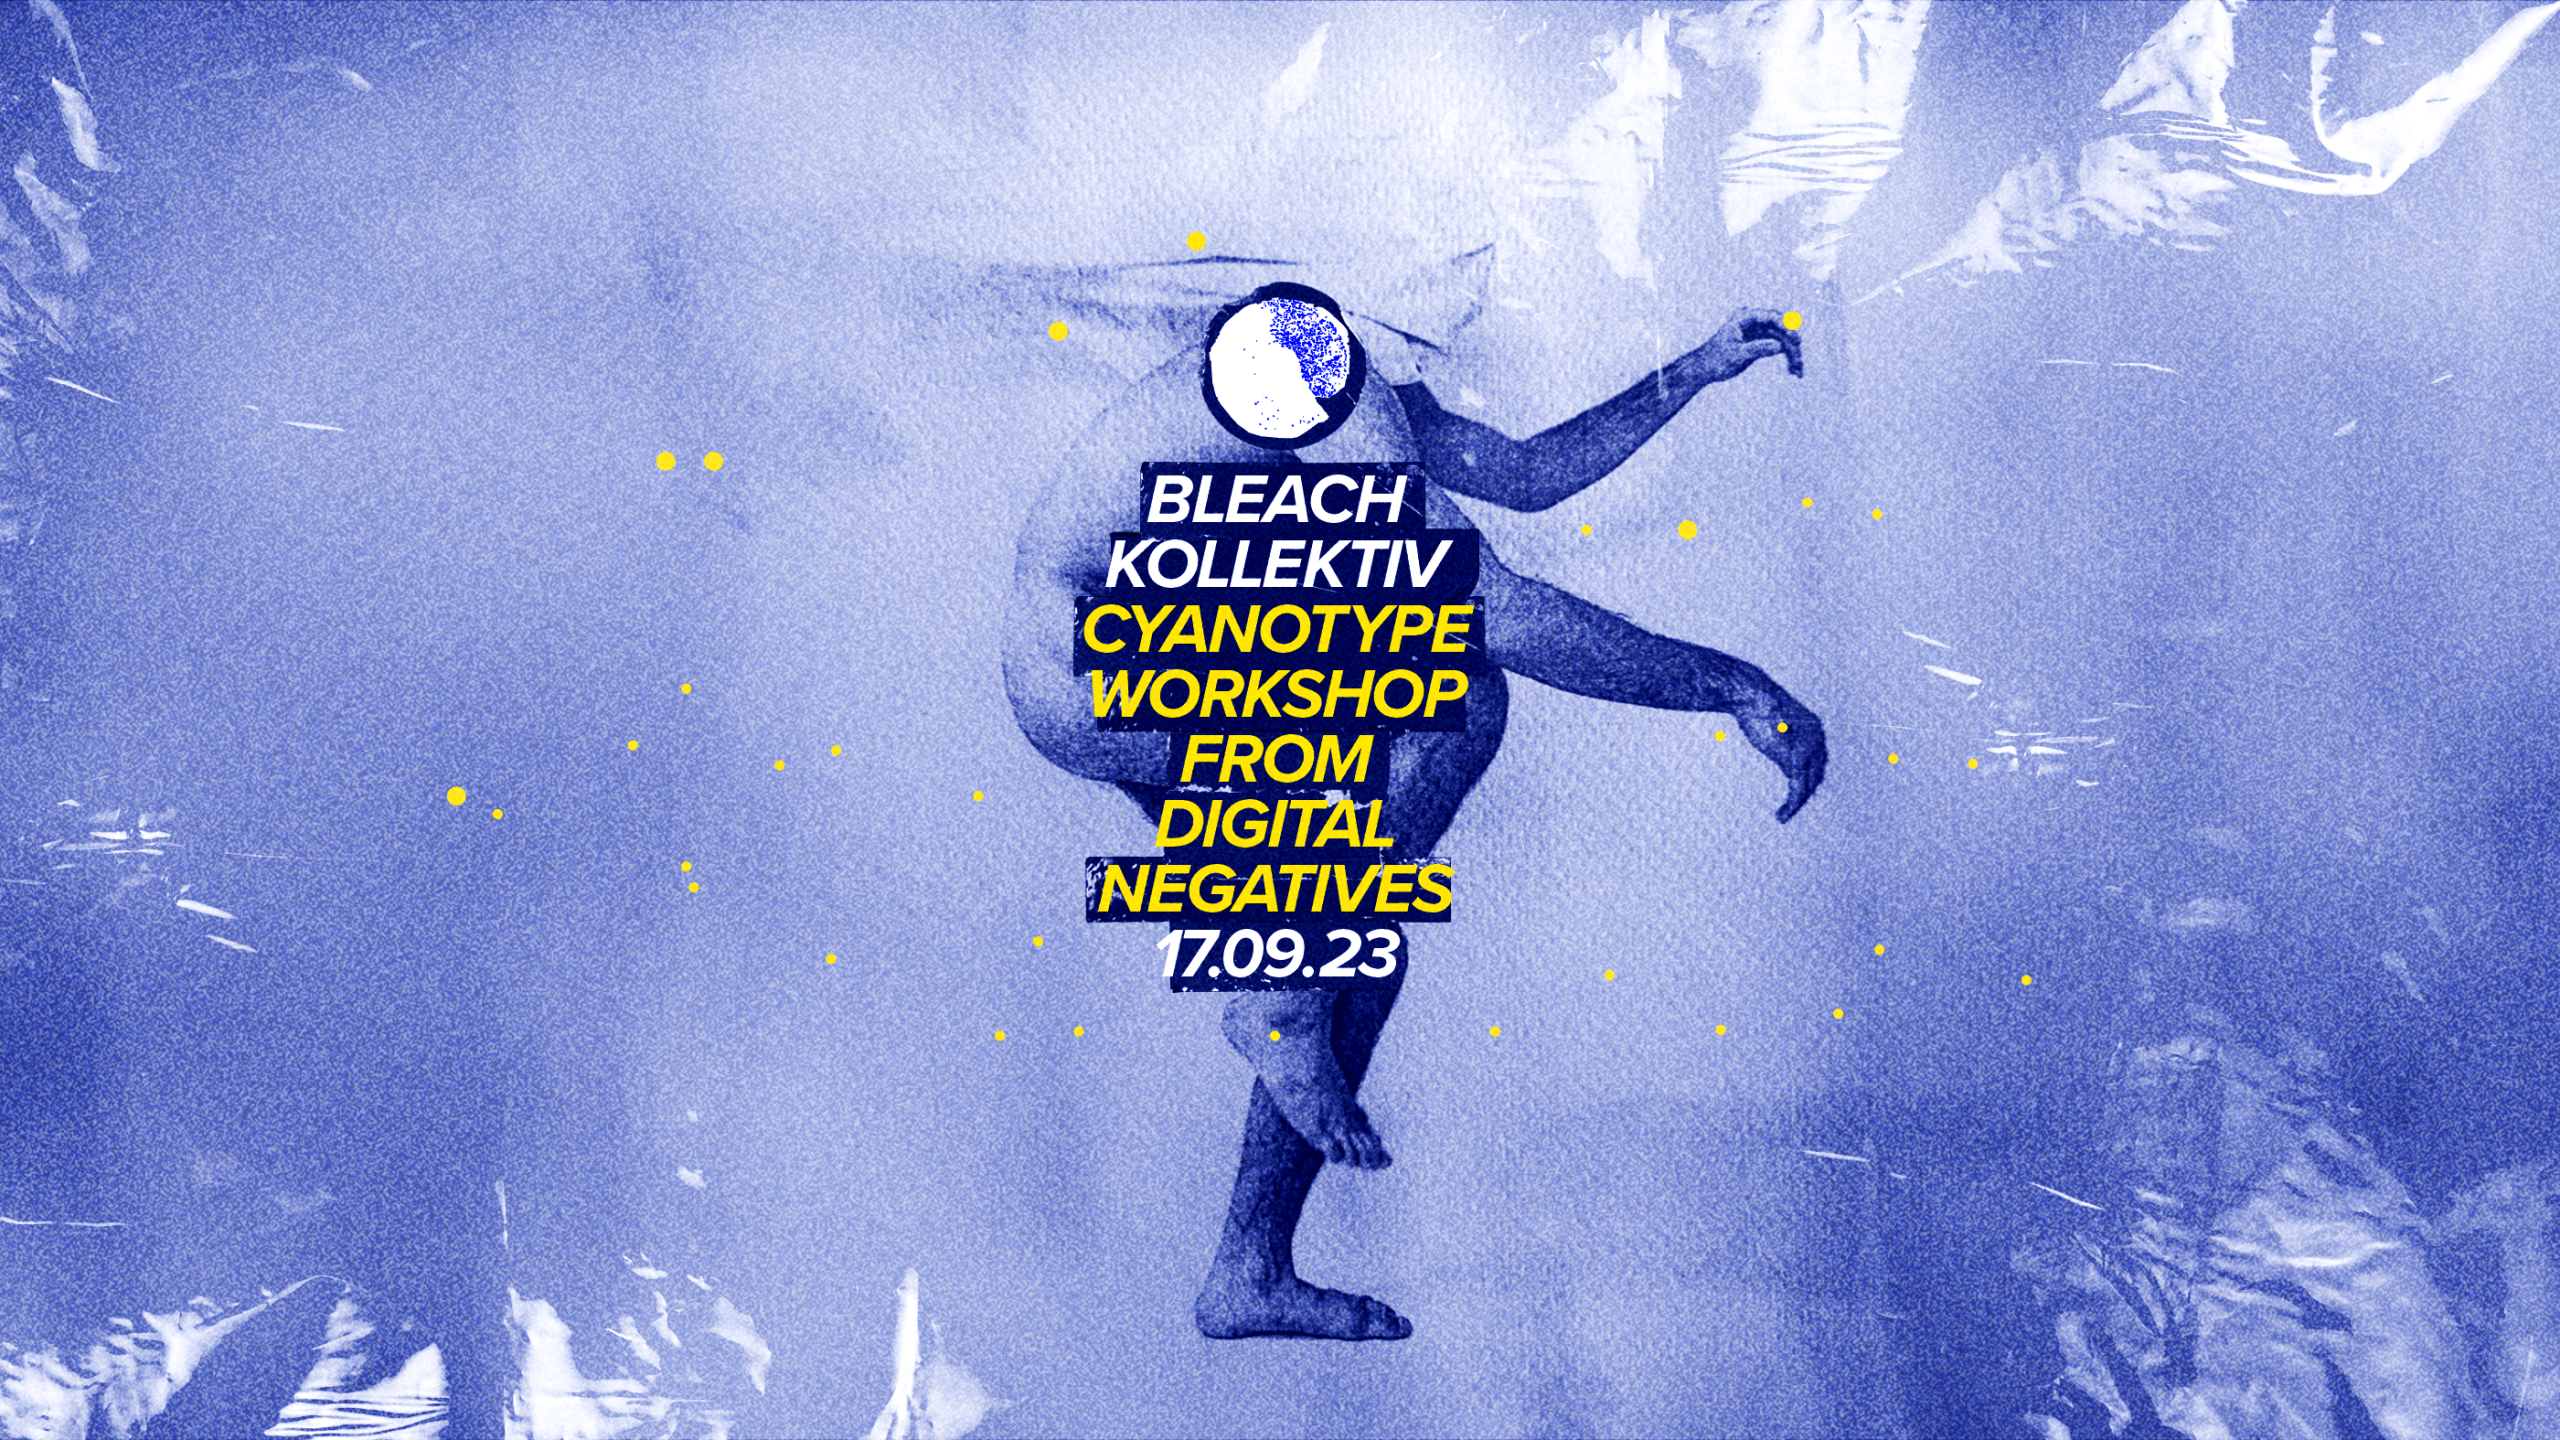 Cyanotype Workshop from Digital Negatives @Bleach Kollektiv